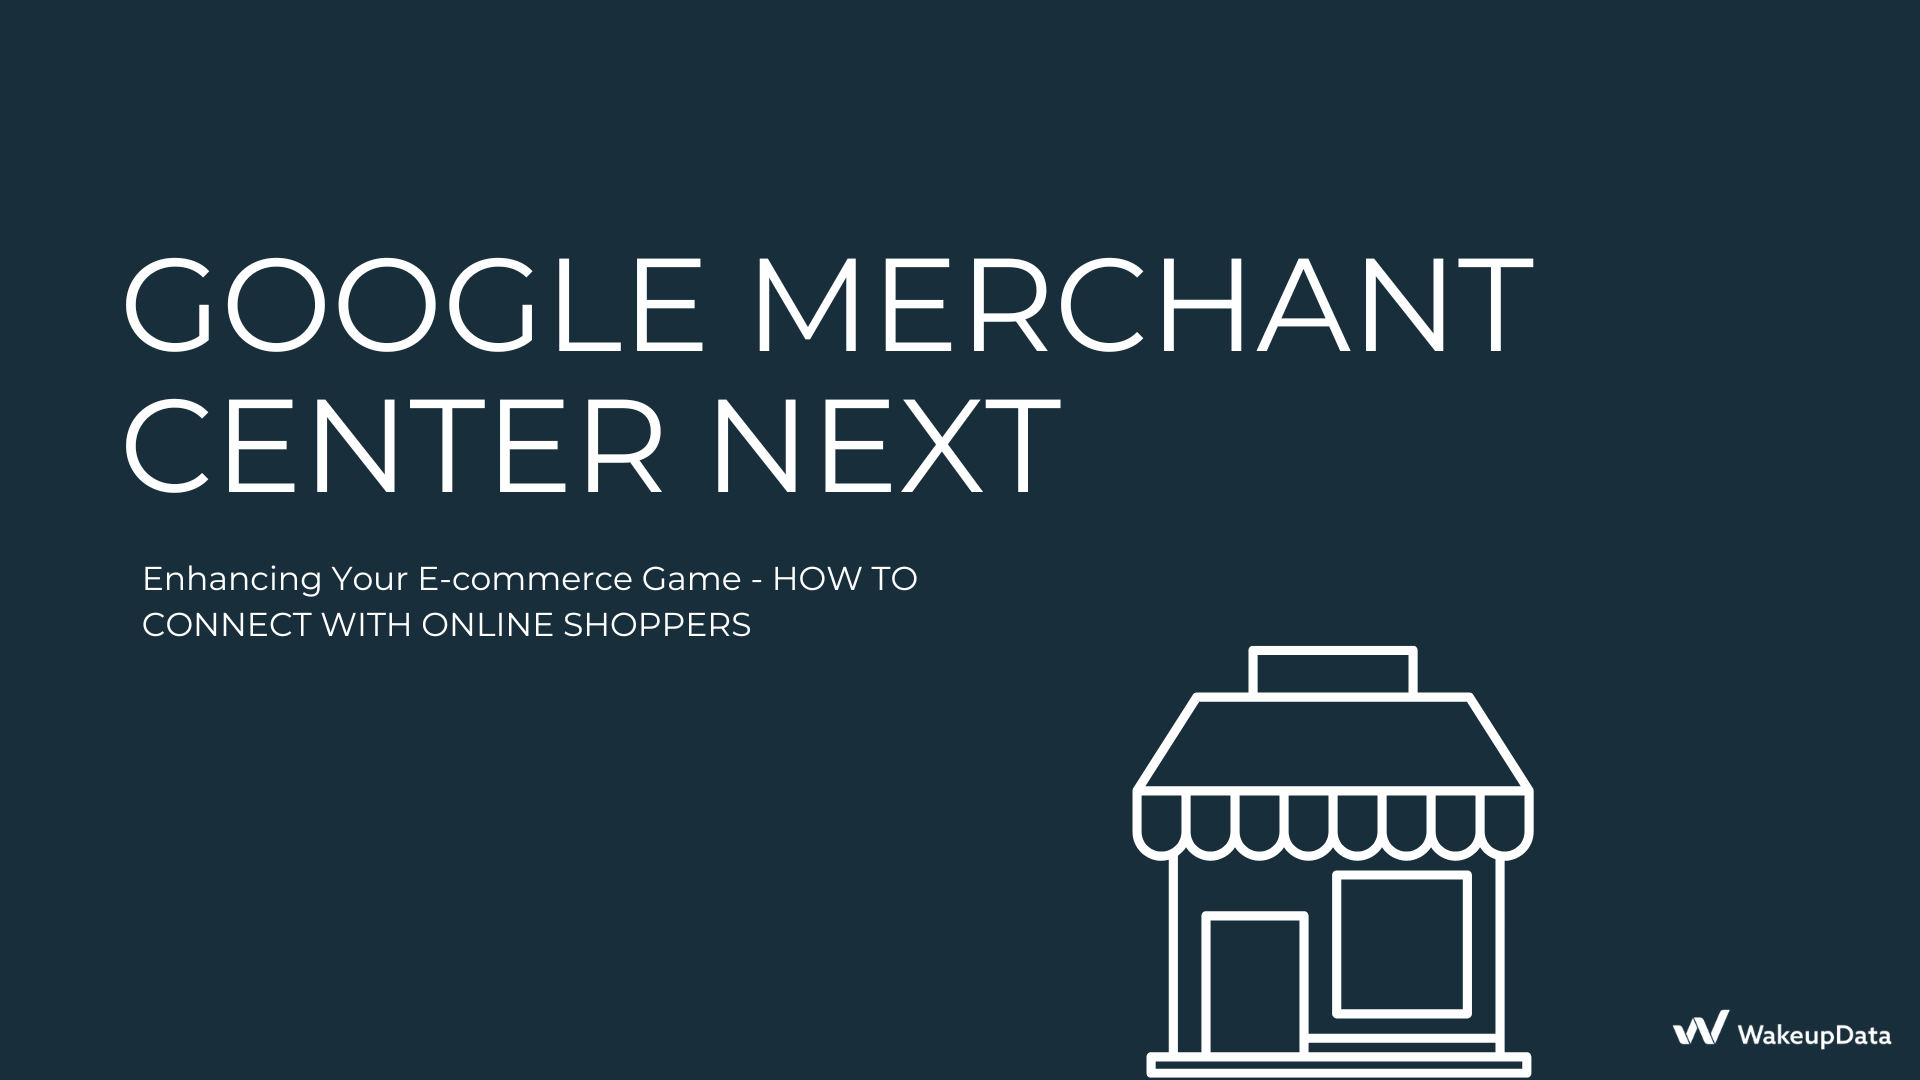 Google Merchant Center Next: A Glimpse into the Future of E-commerce